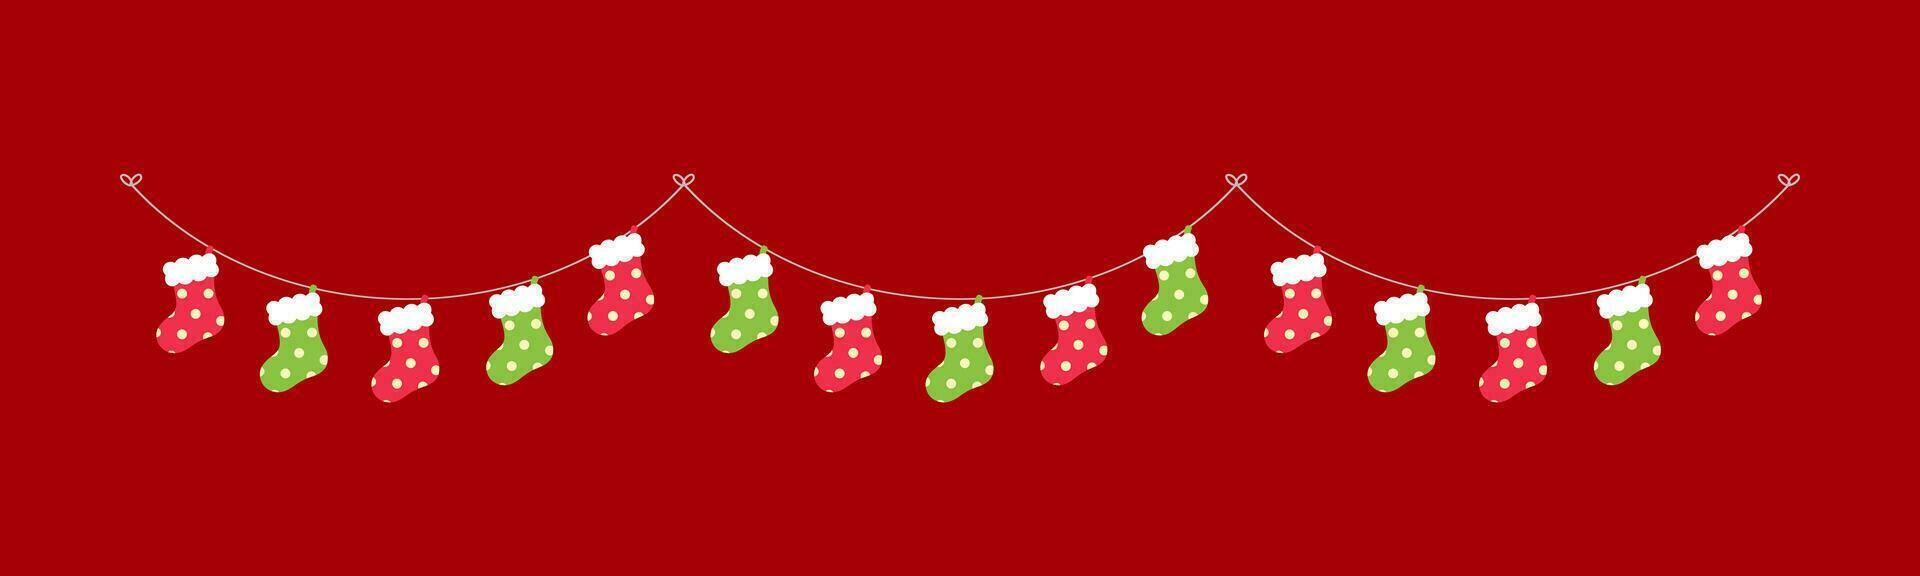 Kerstmis kous slinger vector illustratie, Kerstmis grafiek feestelijk winter vakantie seizoen vlaggedoek